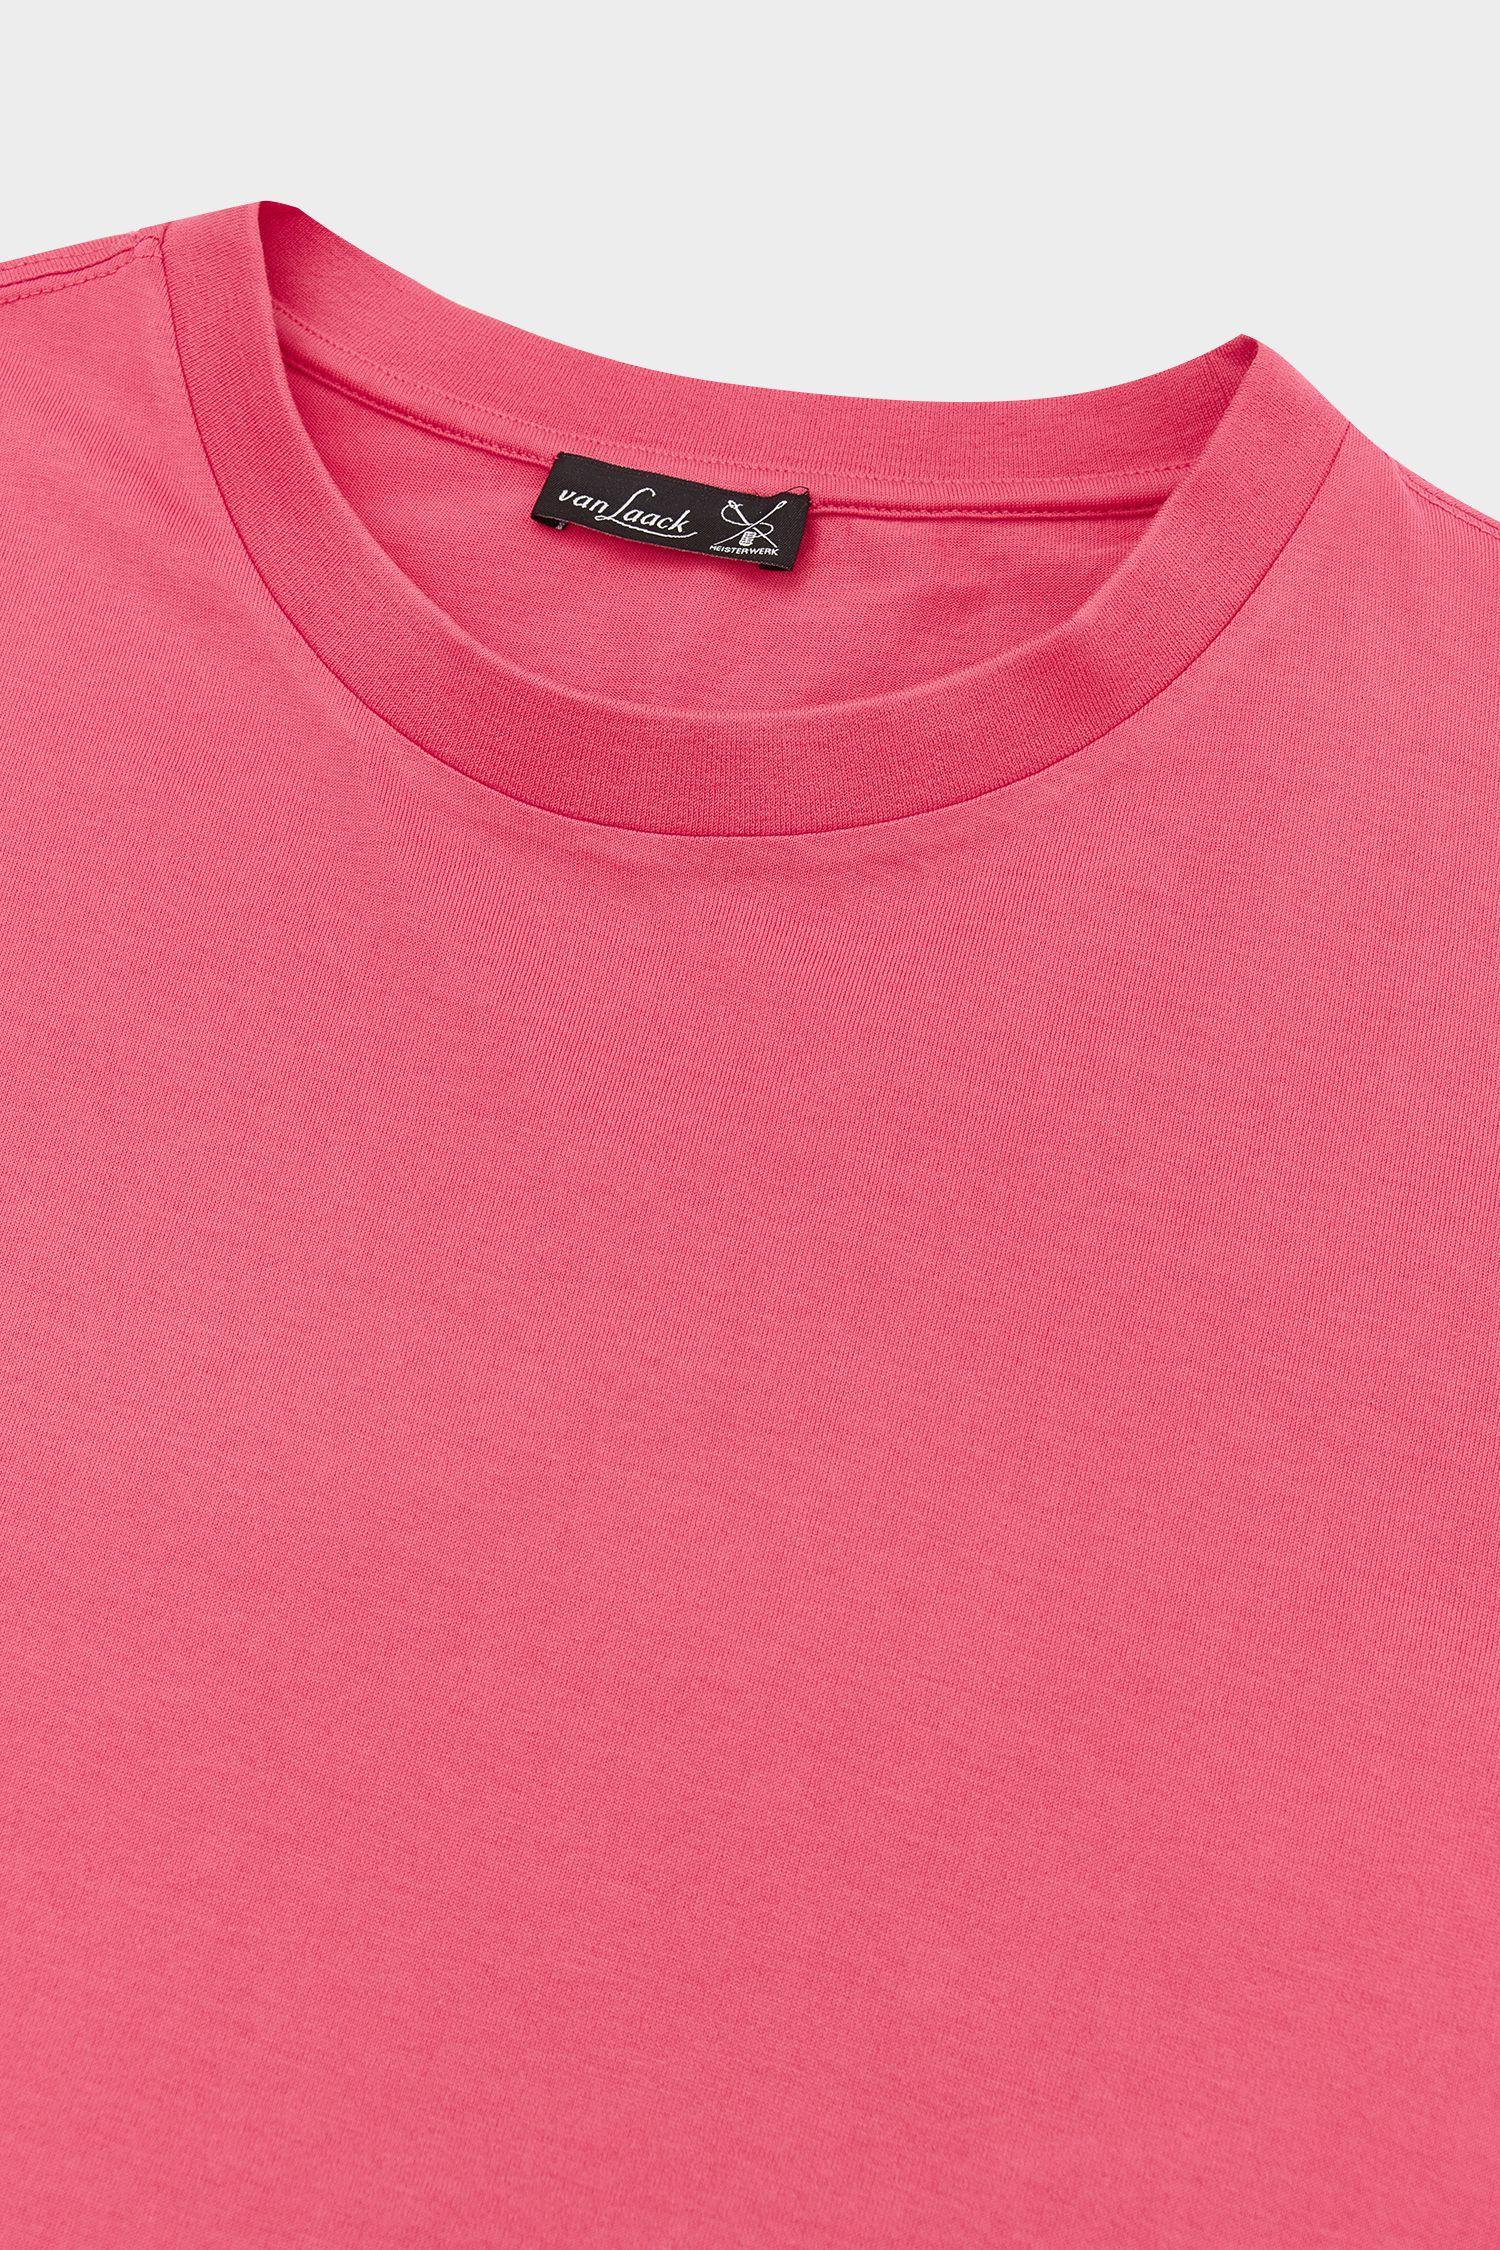 футболка PAOLO ярко-розовый PAOLO_Z20044_540 ,photo 2